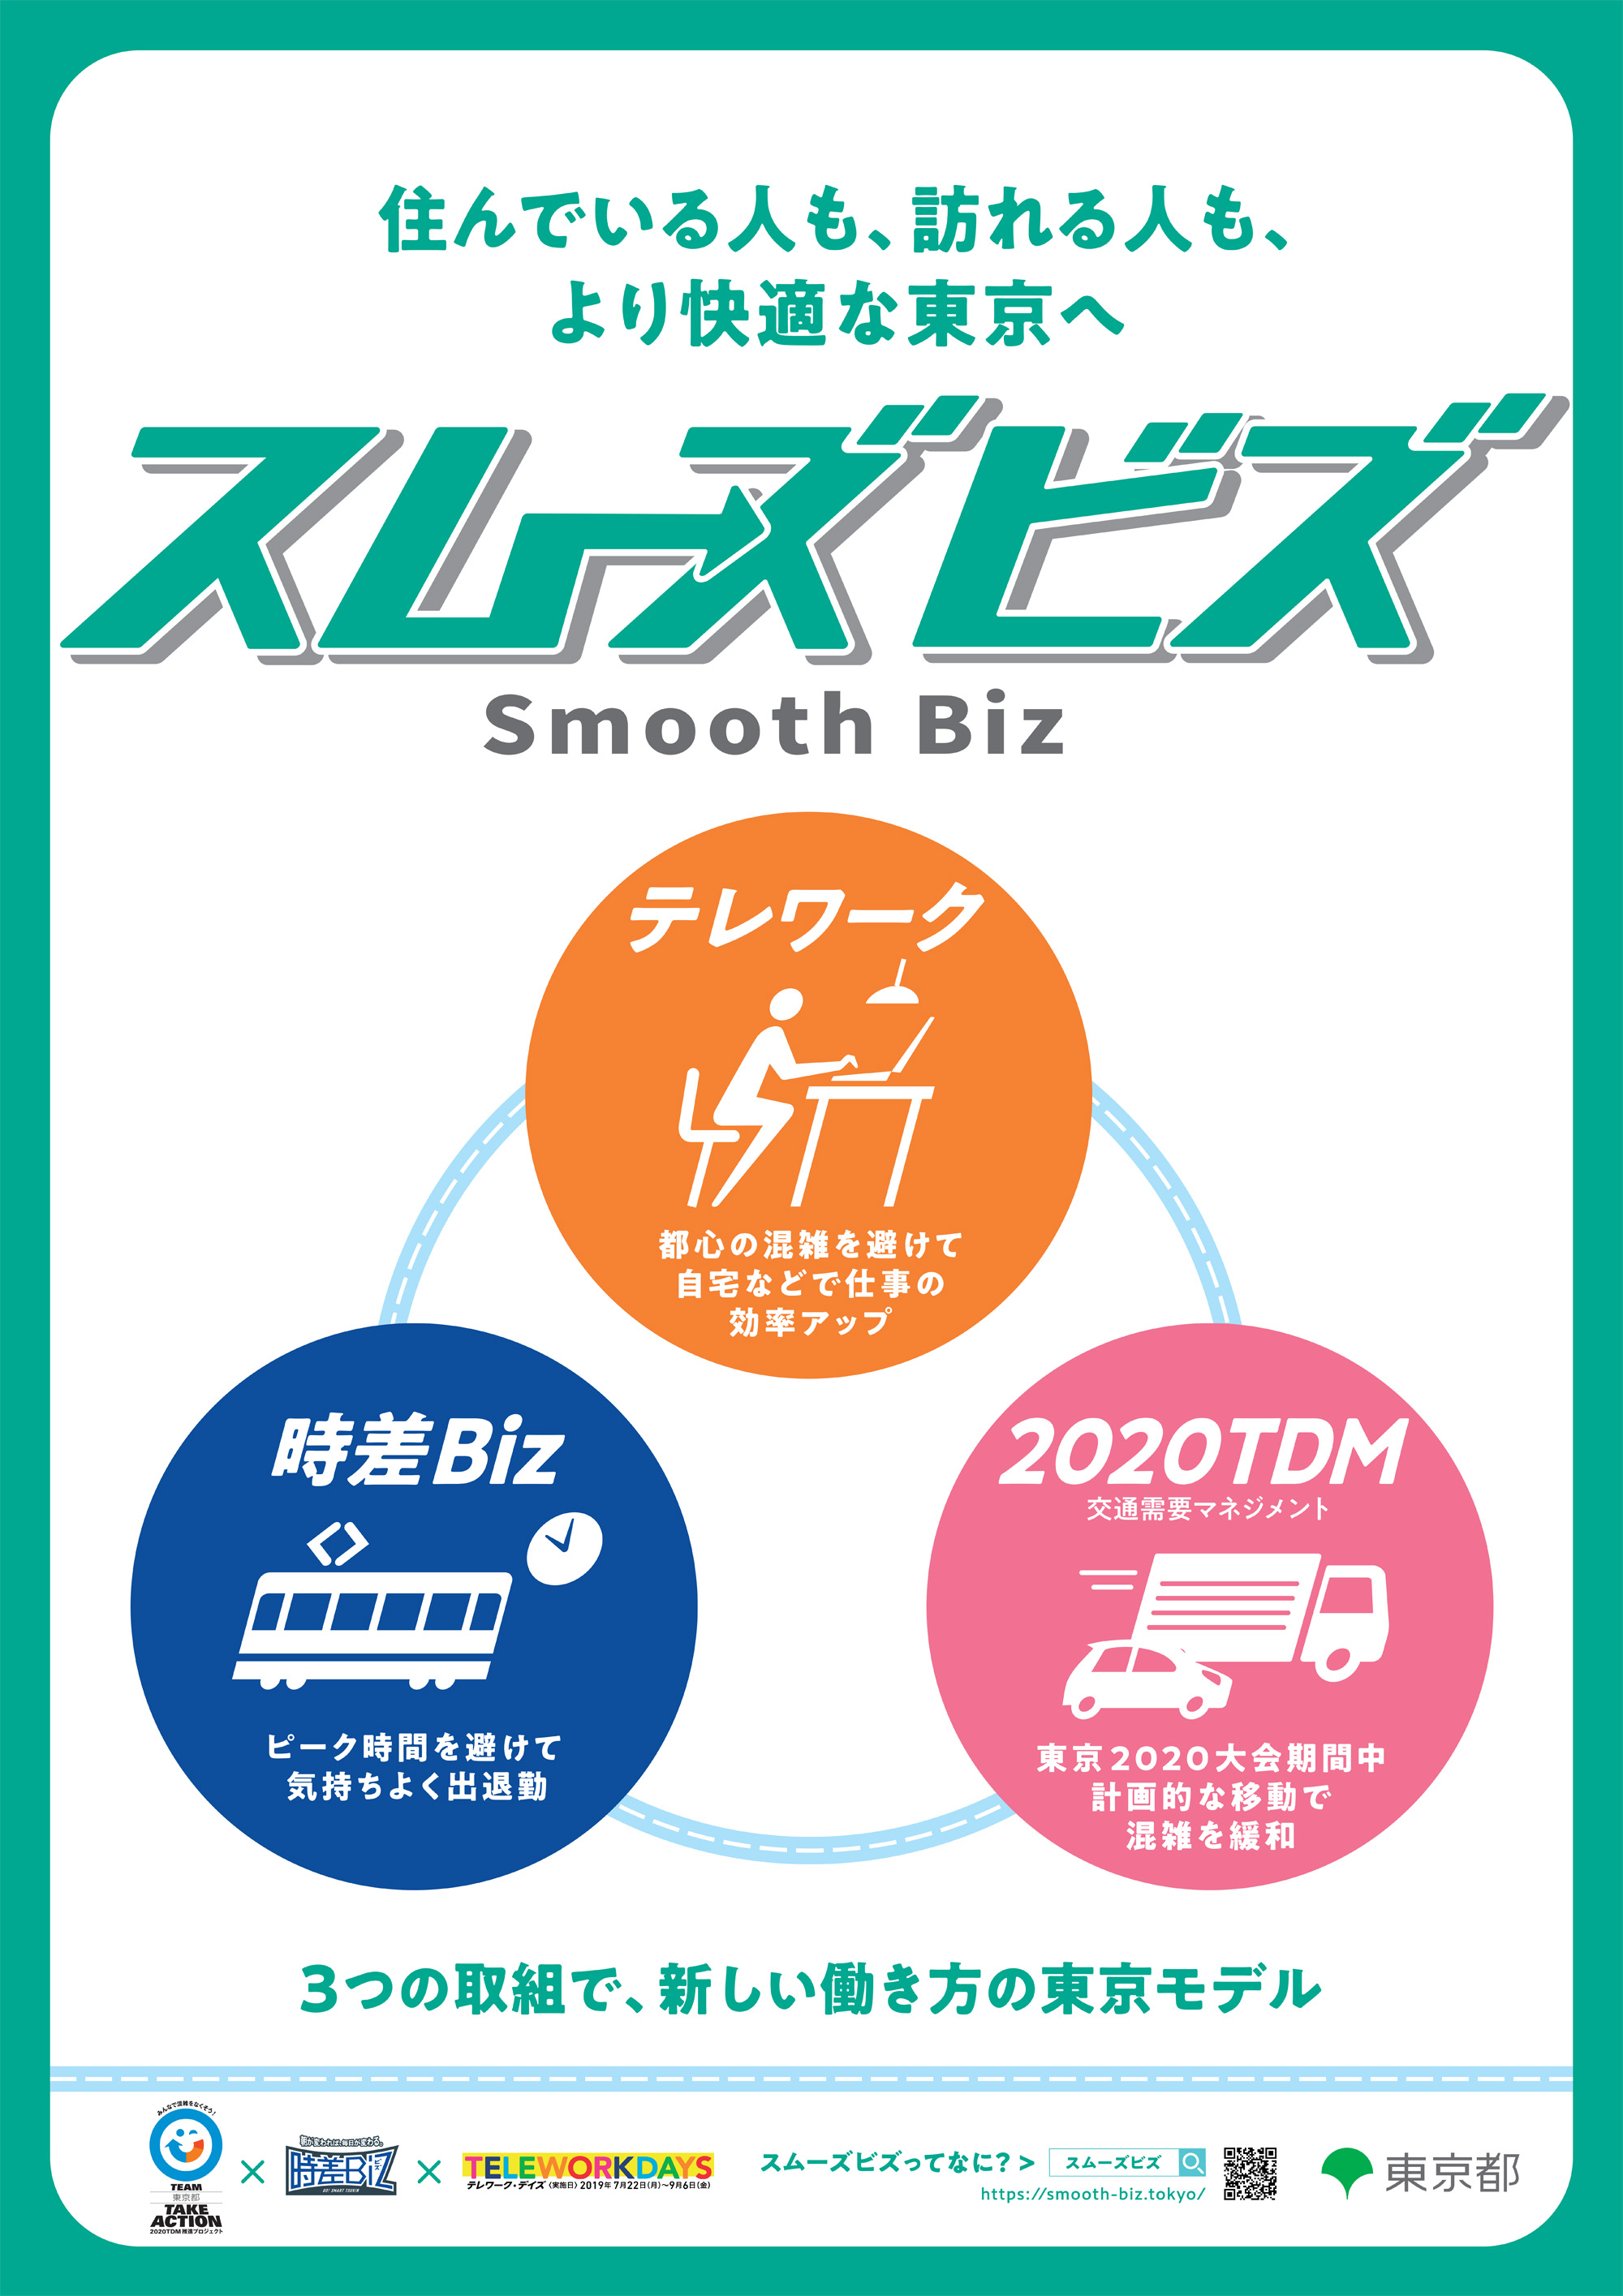 Mit "SmoothBiz" will Tokio den Verkehrskollaps verhindern.